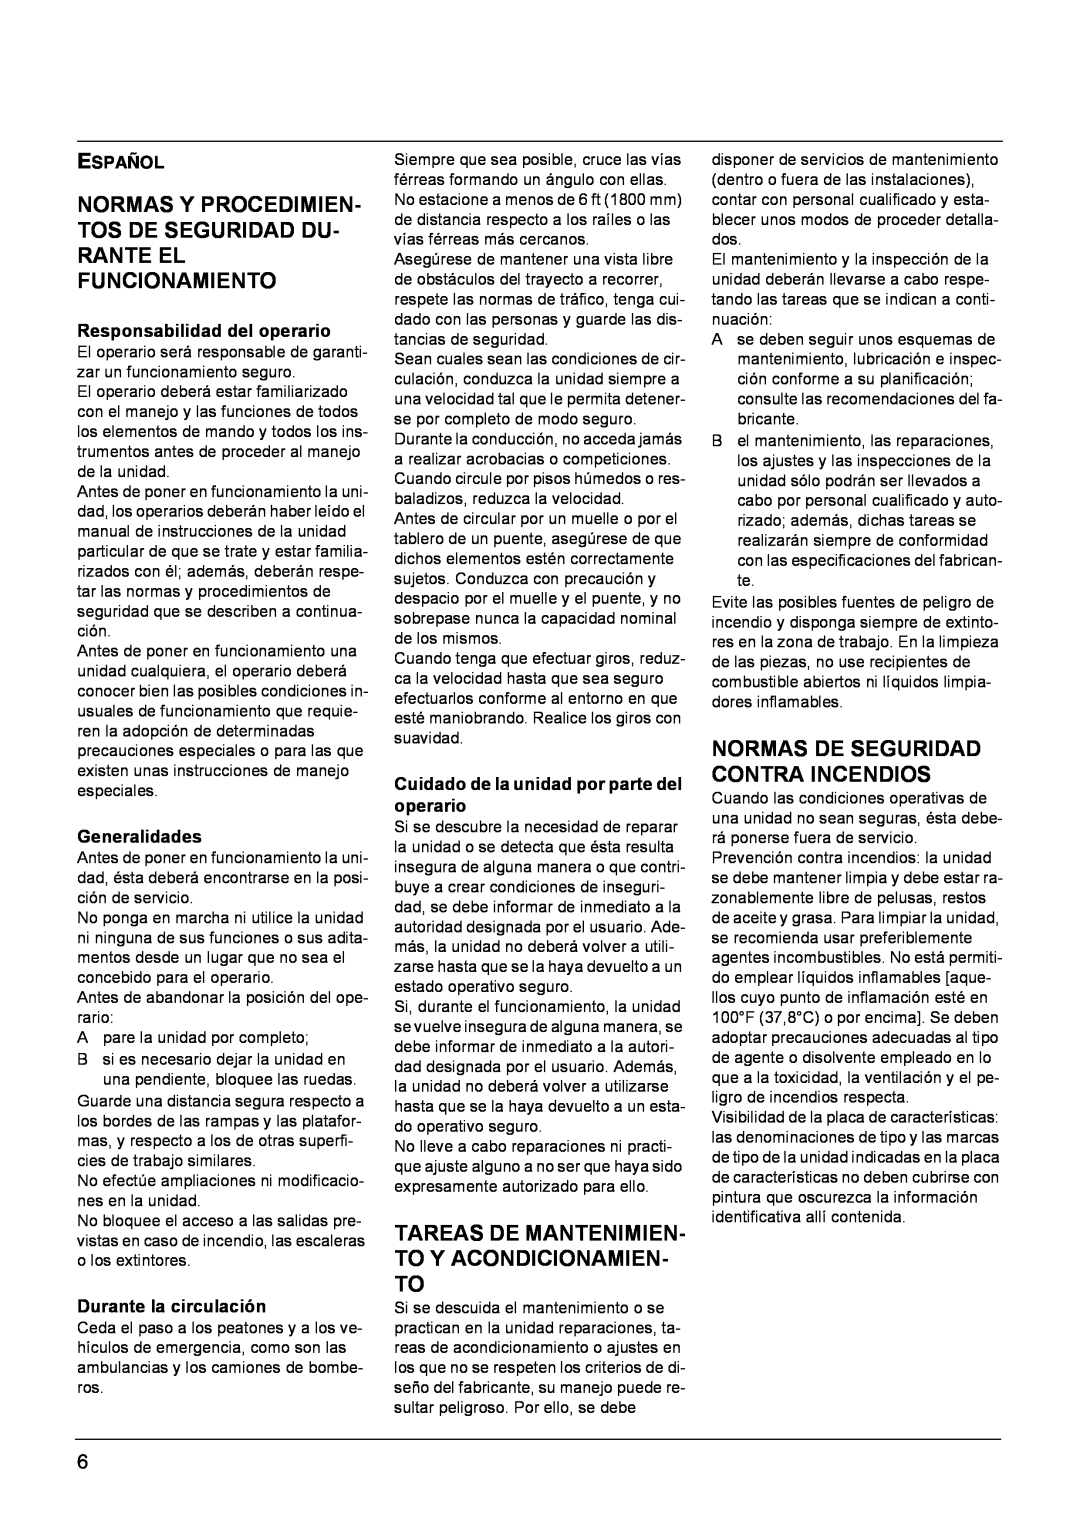 Windsor Sweepers manual Tareas De Mantenimien- To Y Acondicionamien- To, Normas De Seguridad Contra Incendios, Español 